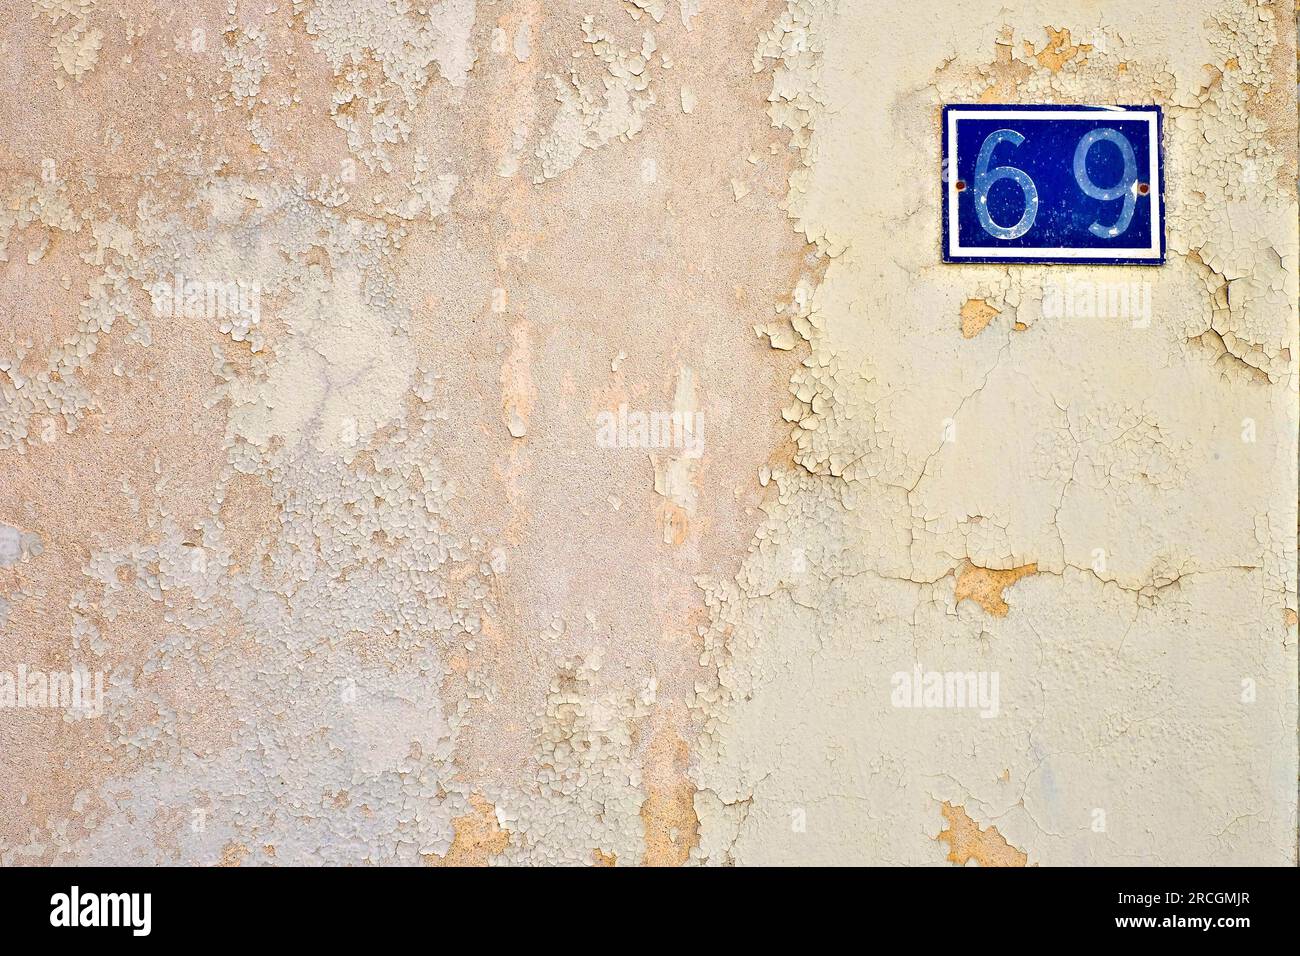 Numéro 69, soixante-neuf, sur une surface murale avec de la peinture altérée. Banque D'Images